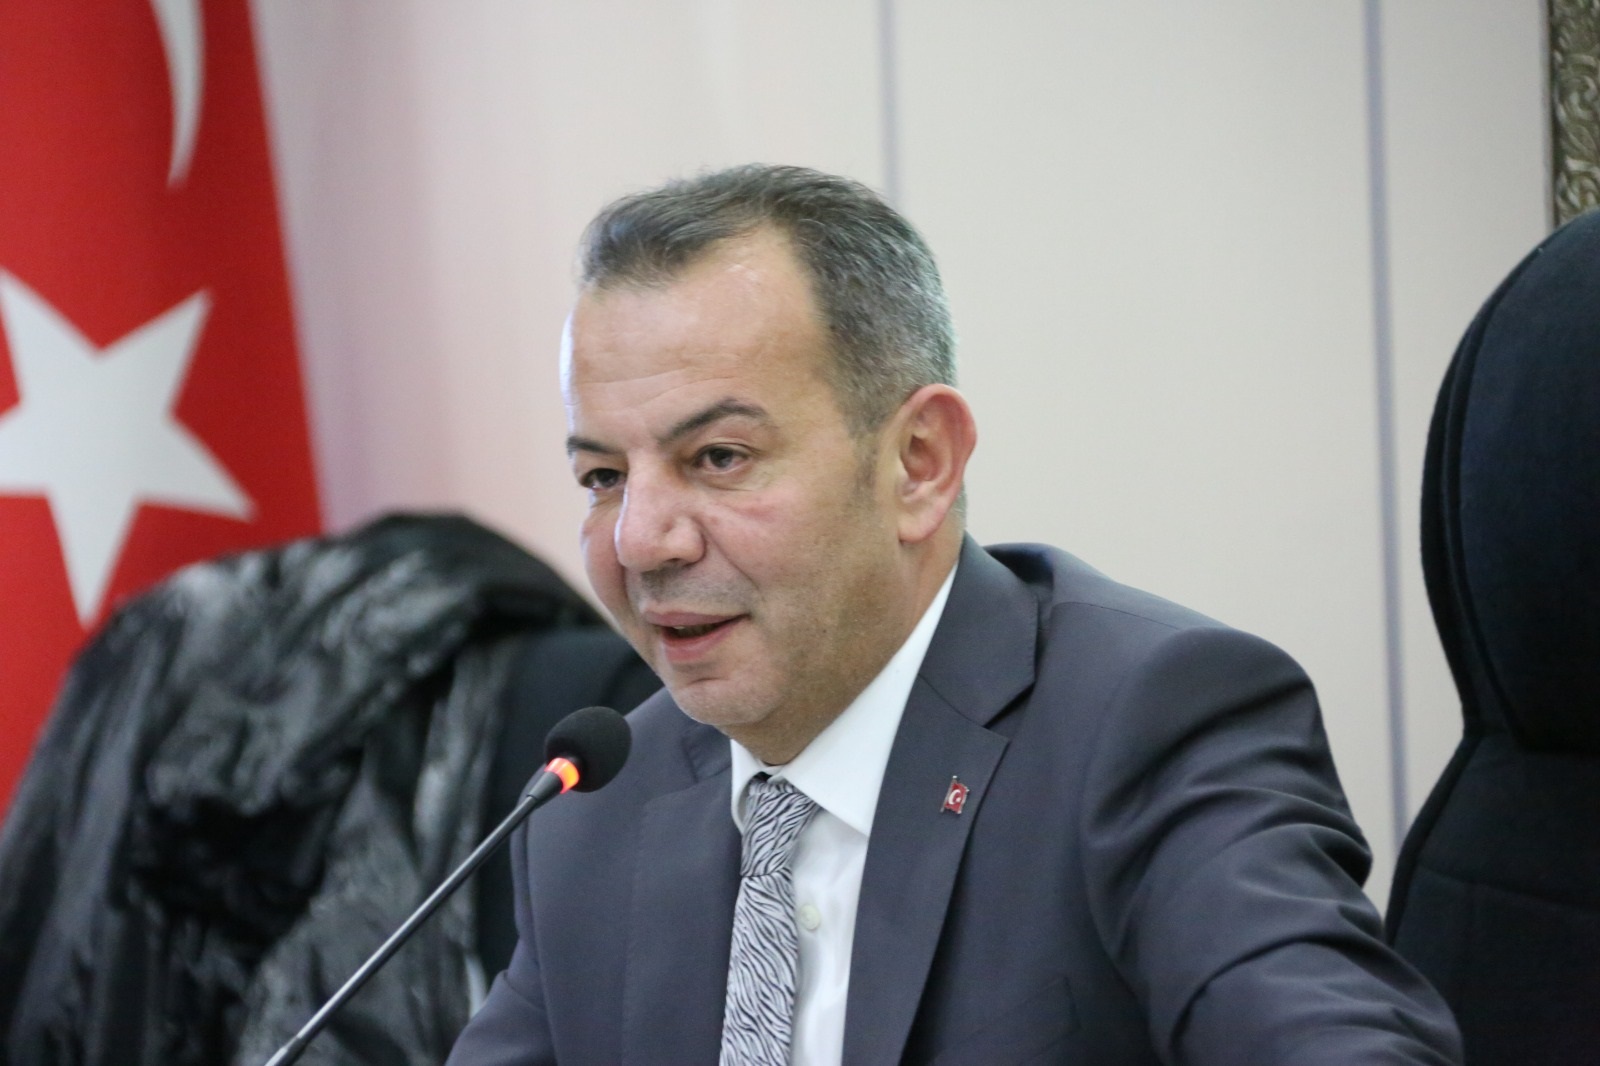 Bolu Belediye Başkanı Özcan, CHP YDK’nin kararını değerlendirdi: